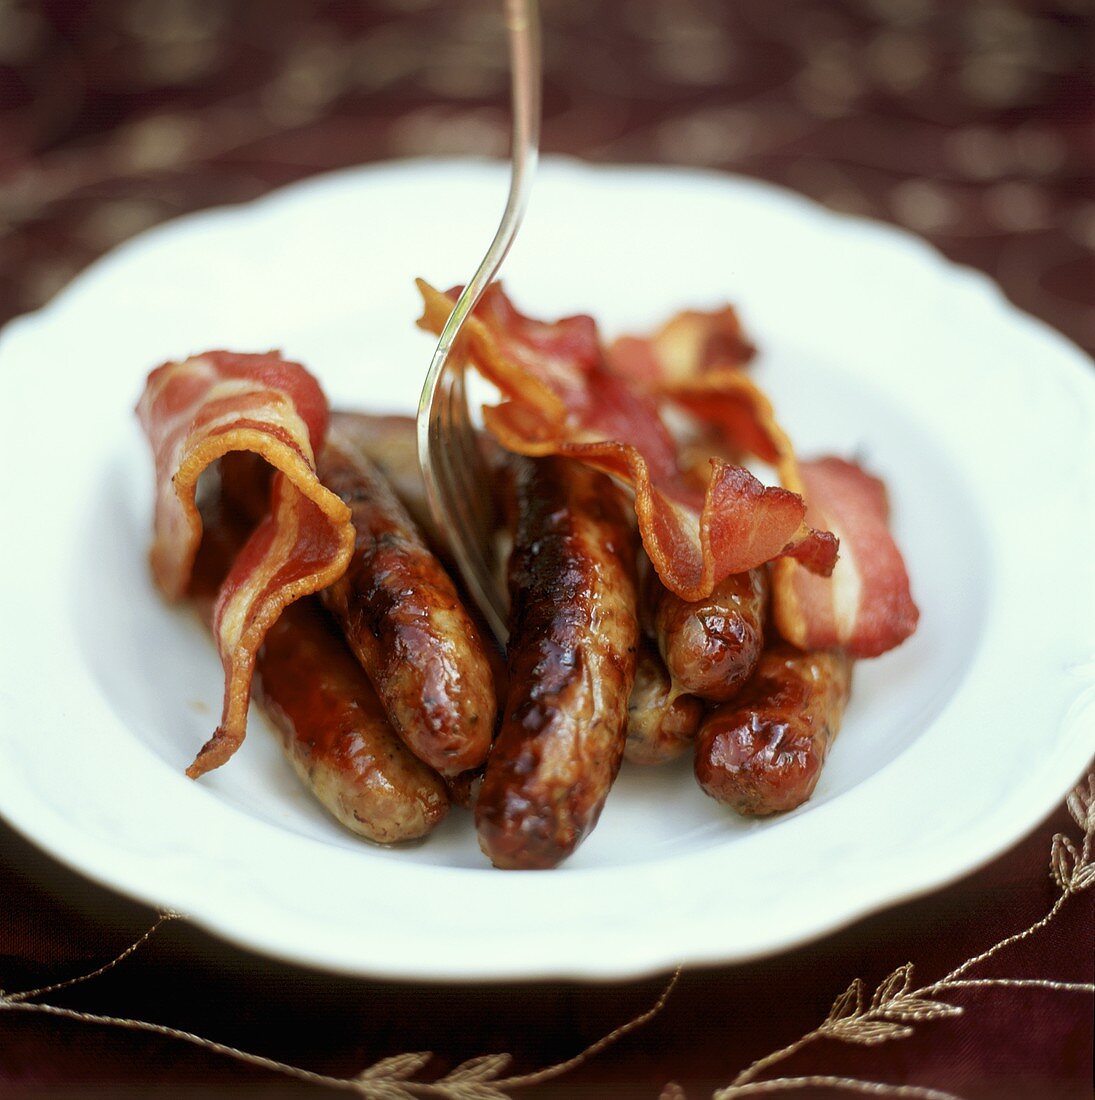 Bacon and Sausages (Frühstücksspeck und Würstchen,England)